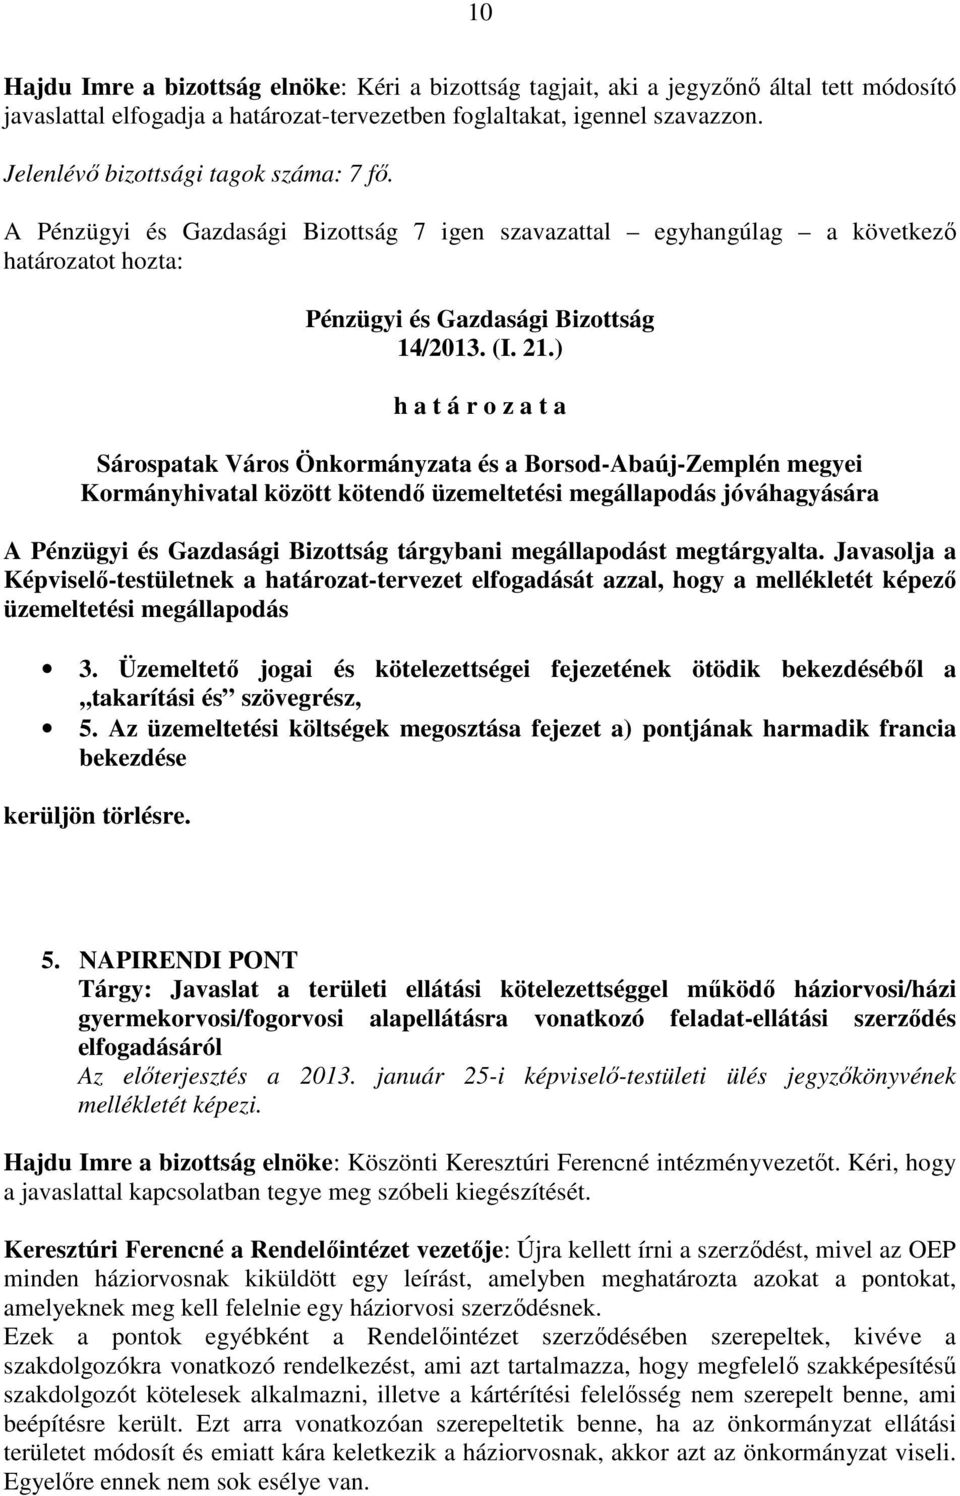 ) Sárospatak Város Önkormányzata és a Borsod-Abaúj-Zemplén megyei Kormányhivatal között kötendő üzemeltetési megállapodás jóváhagyására A tárgybani megállapodást megtárgyalta.